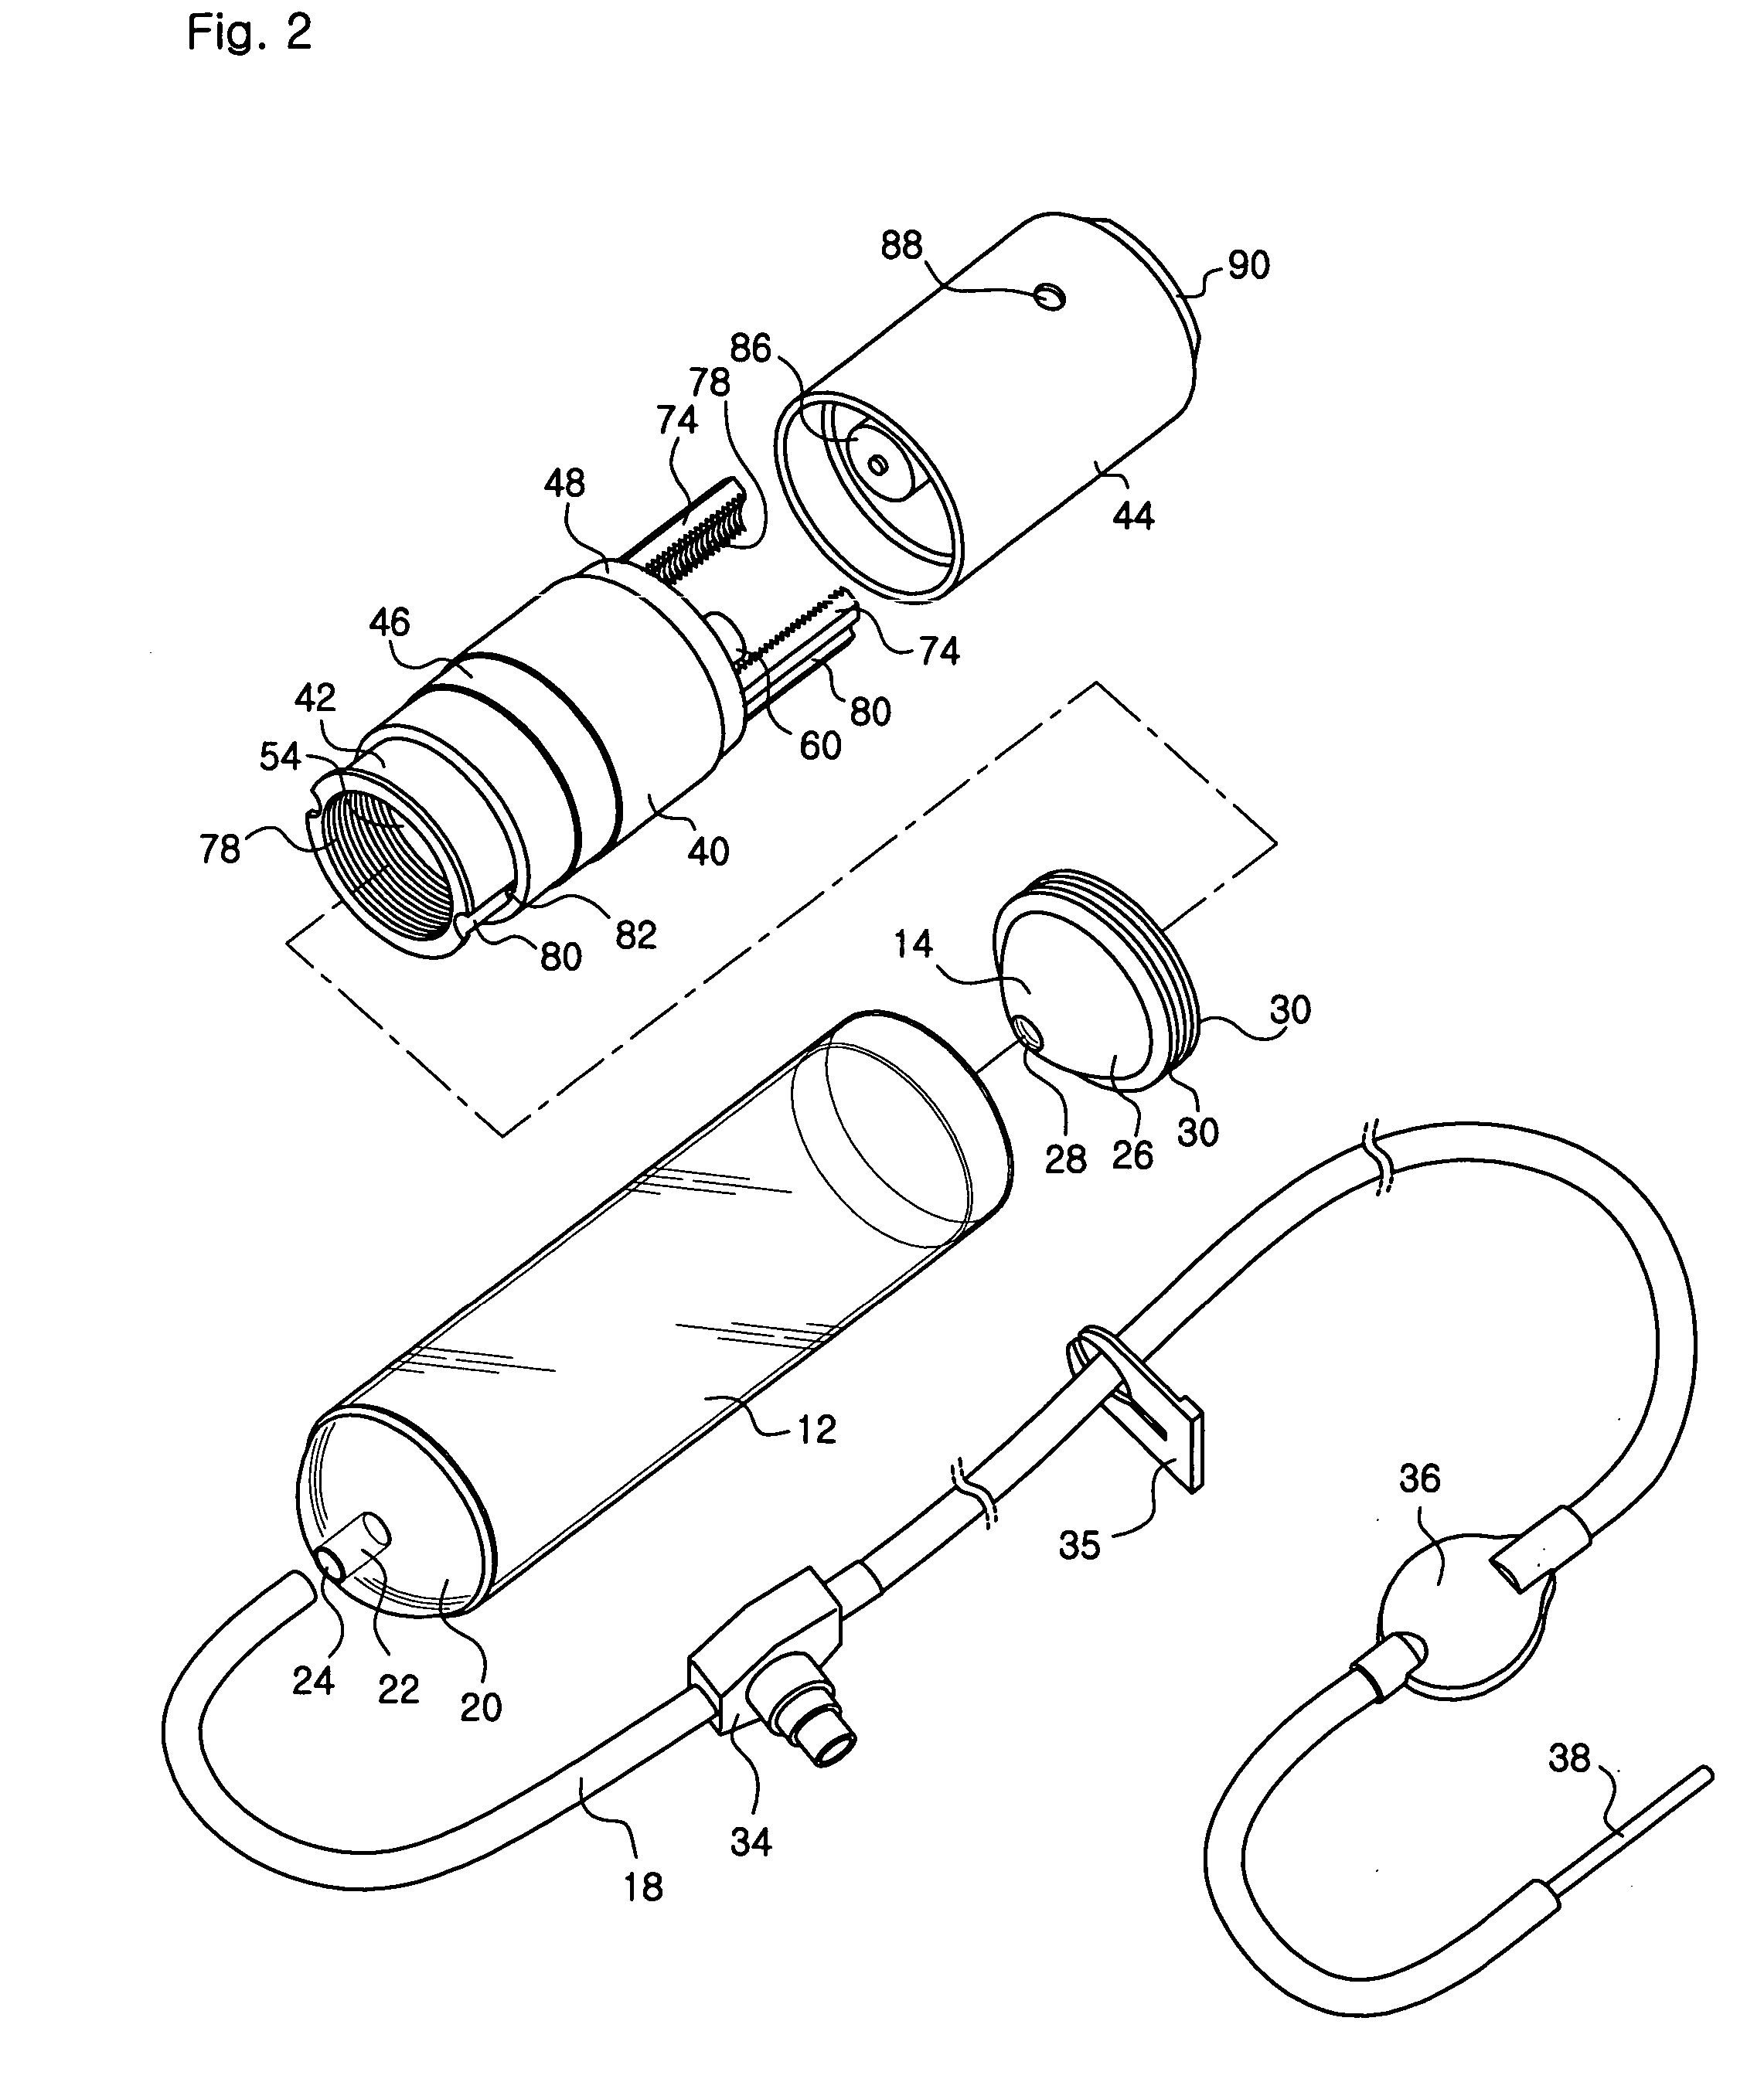 Liquid supply apparatus